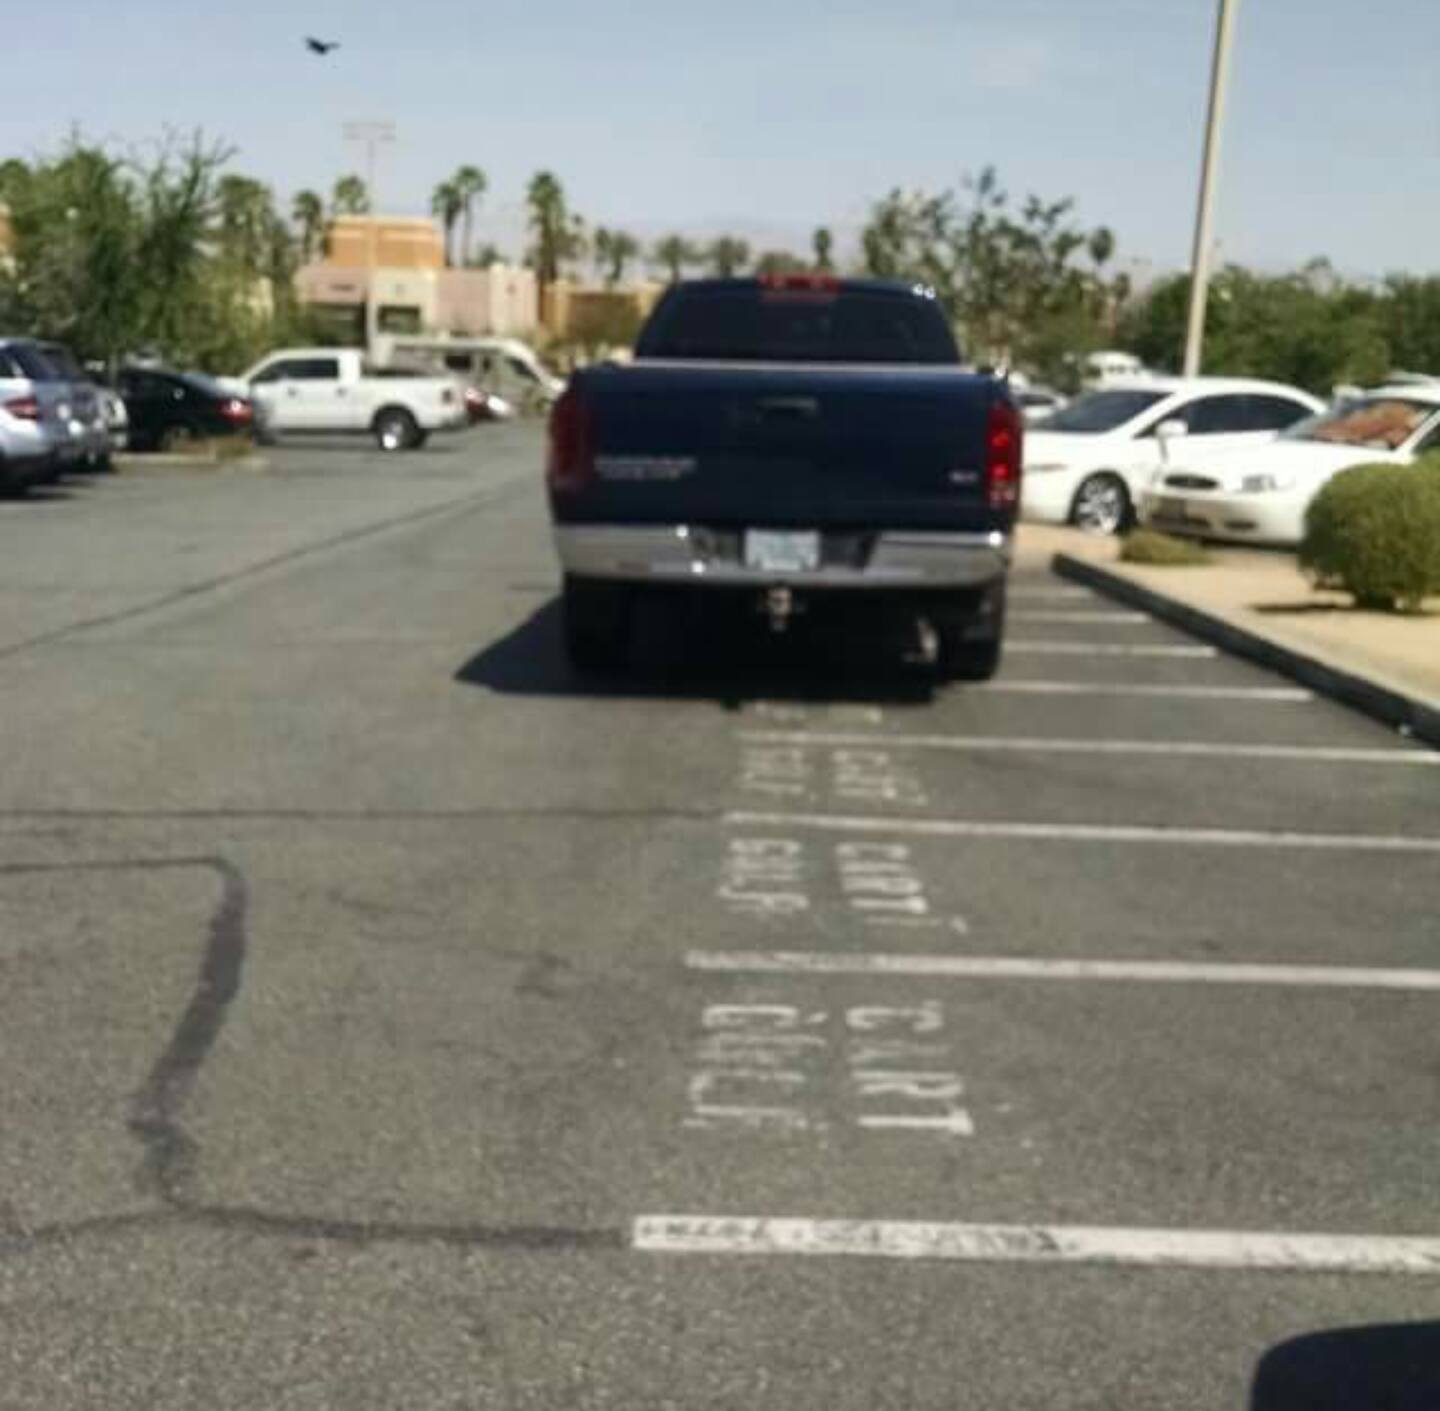 Ass parking